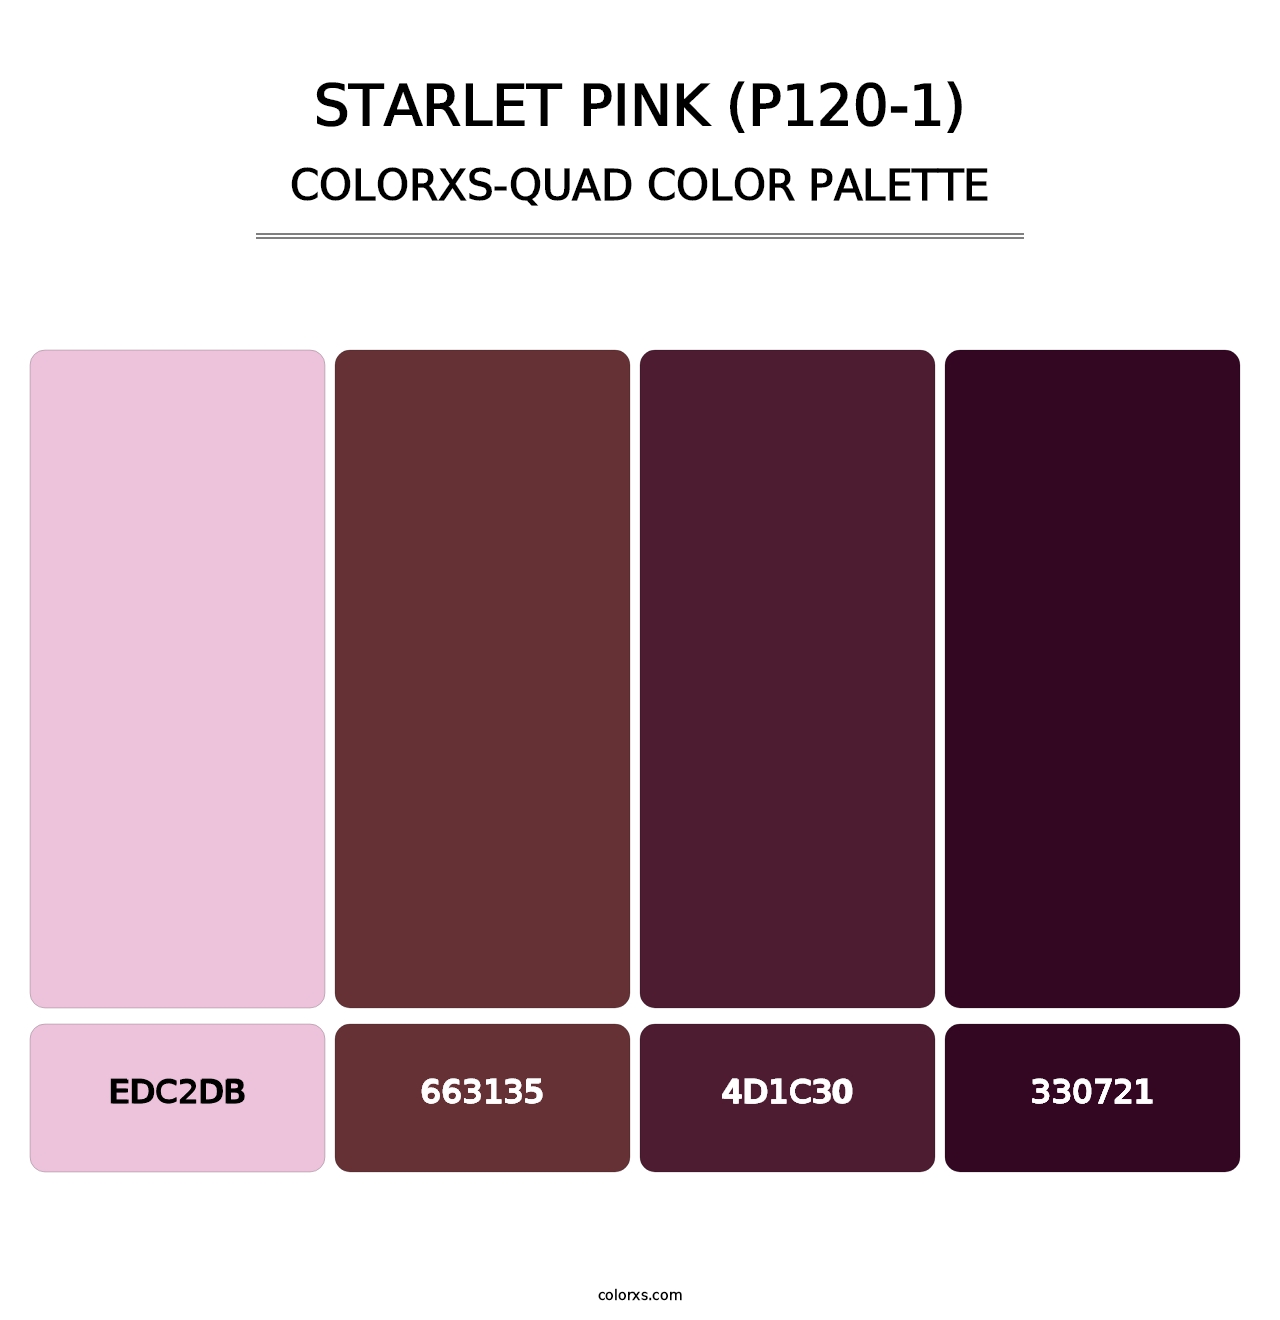 Starlet Pink (P120-1) - Colorxs Quad Palette